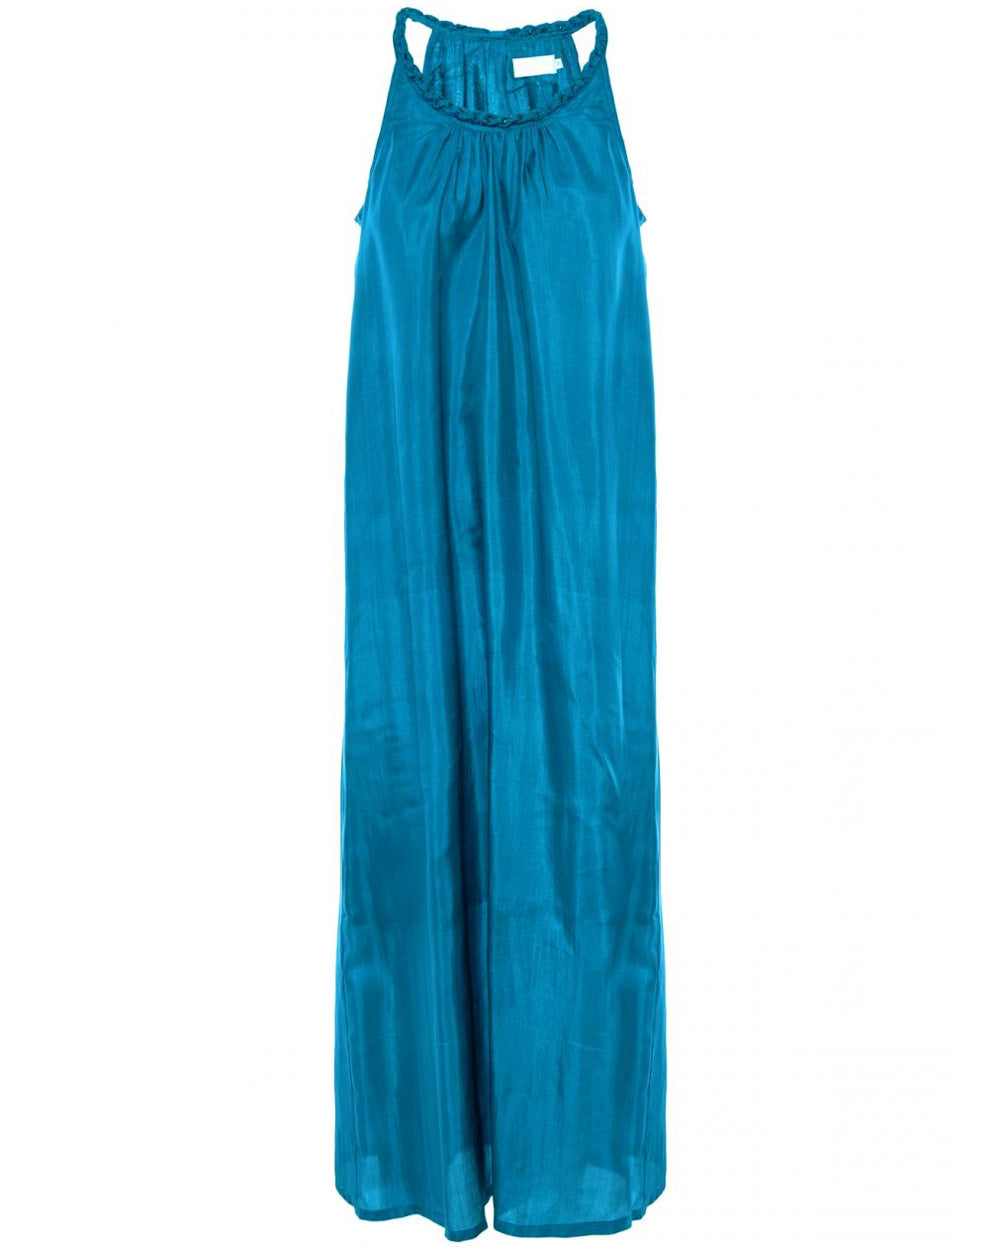 Turquoise Odiue Braided Slip Dress